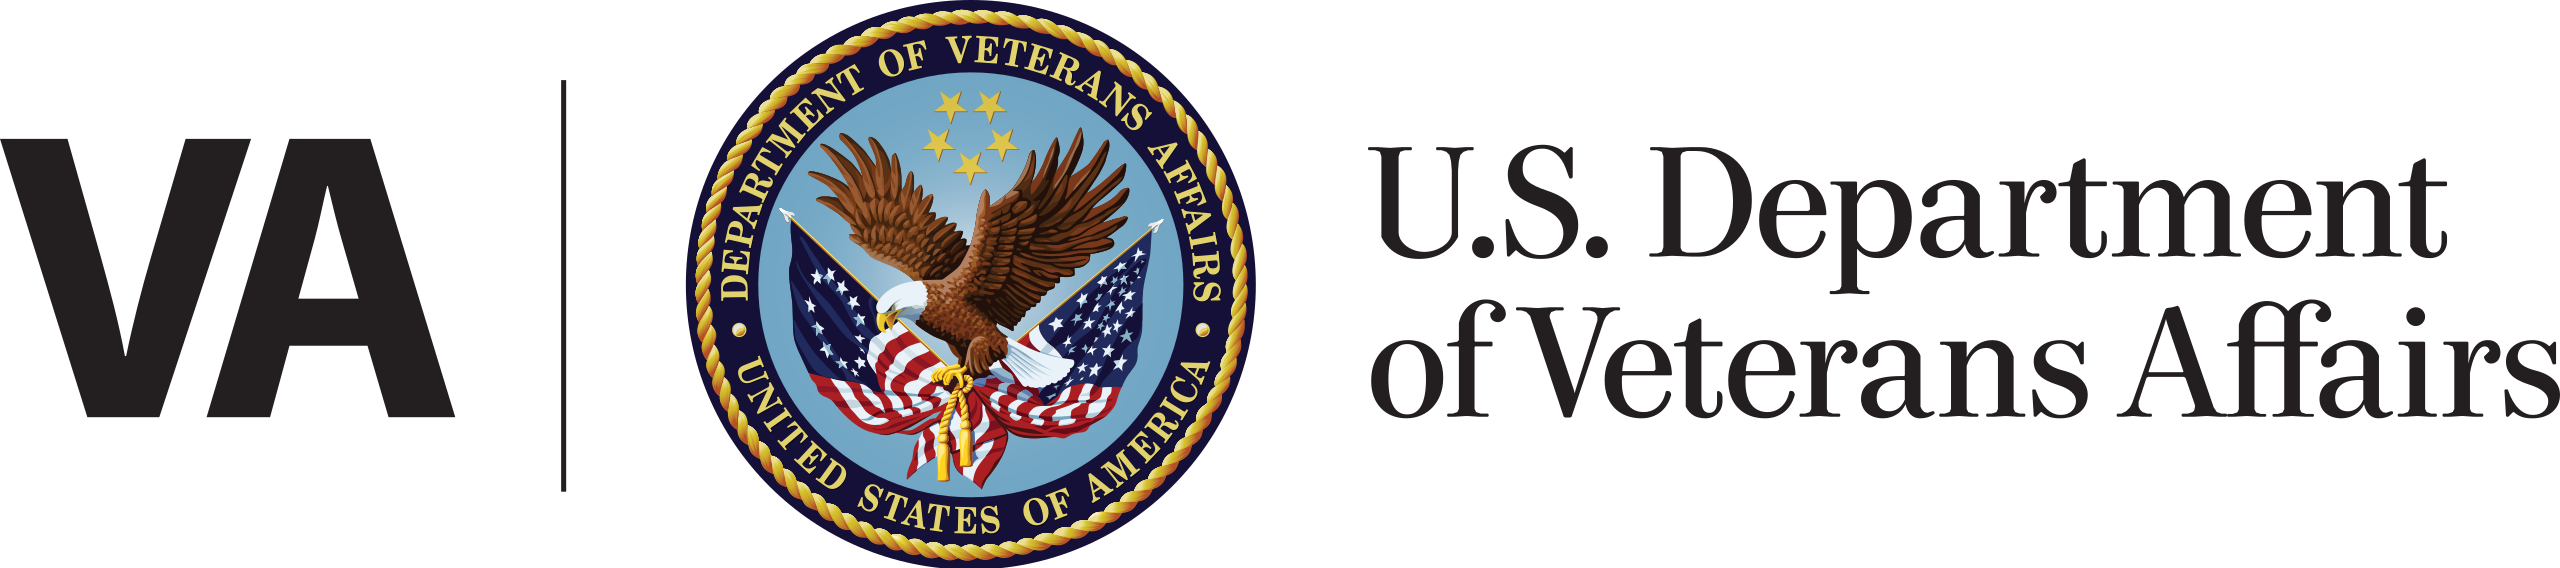 Department of Veterans Affairs 